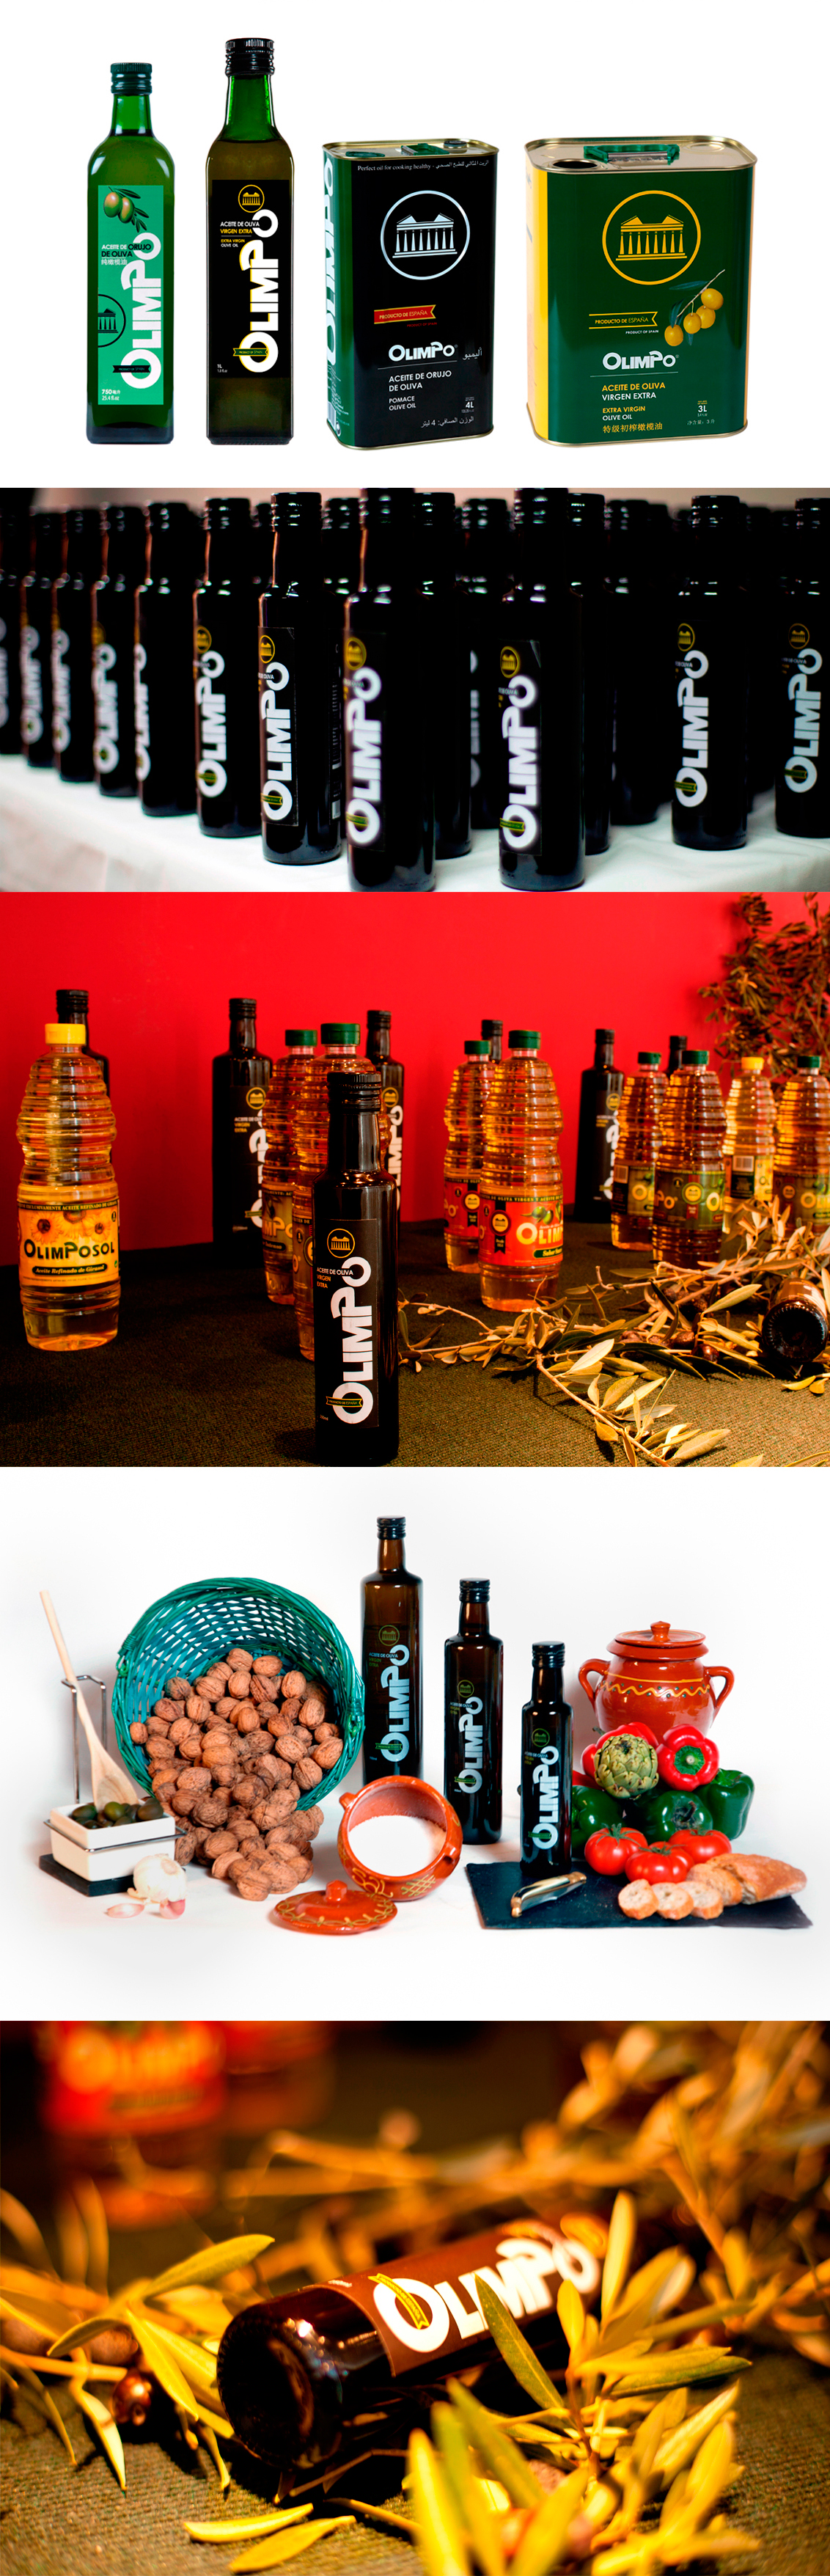 Fotografia publicitaria Albacete, fotografías de productos realizadas para aceites Olimpo